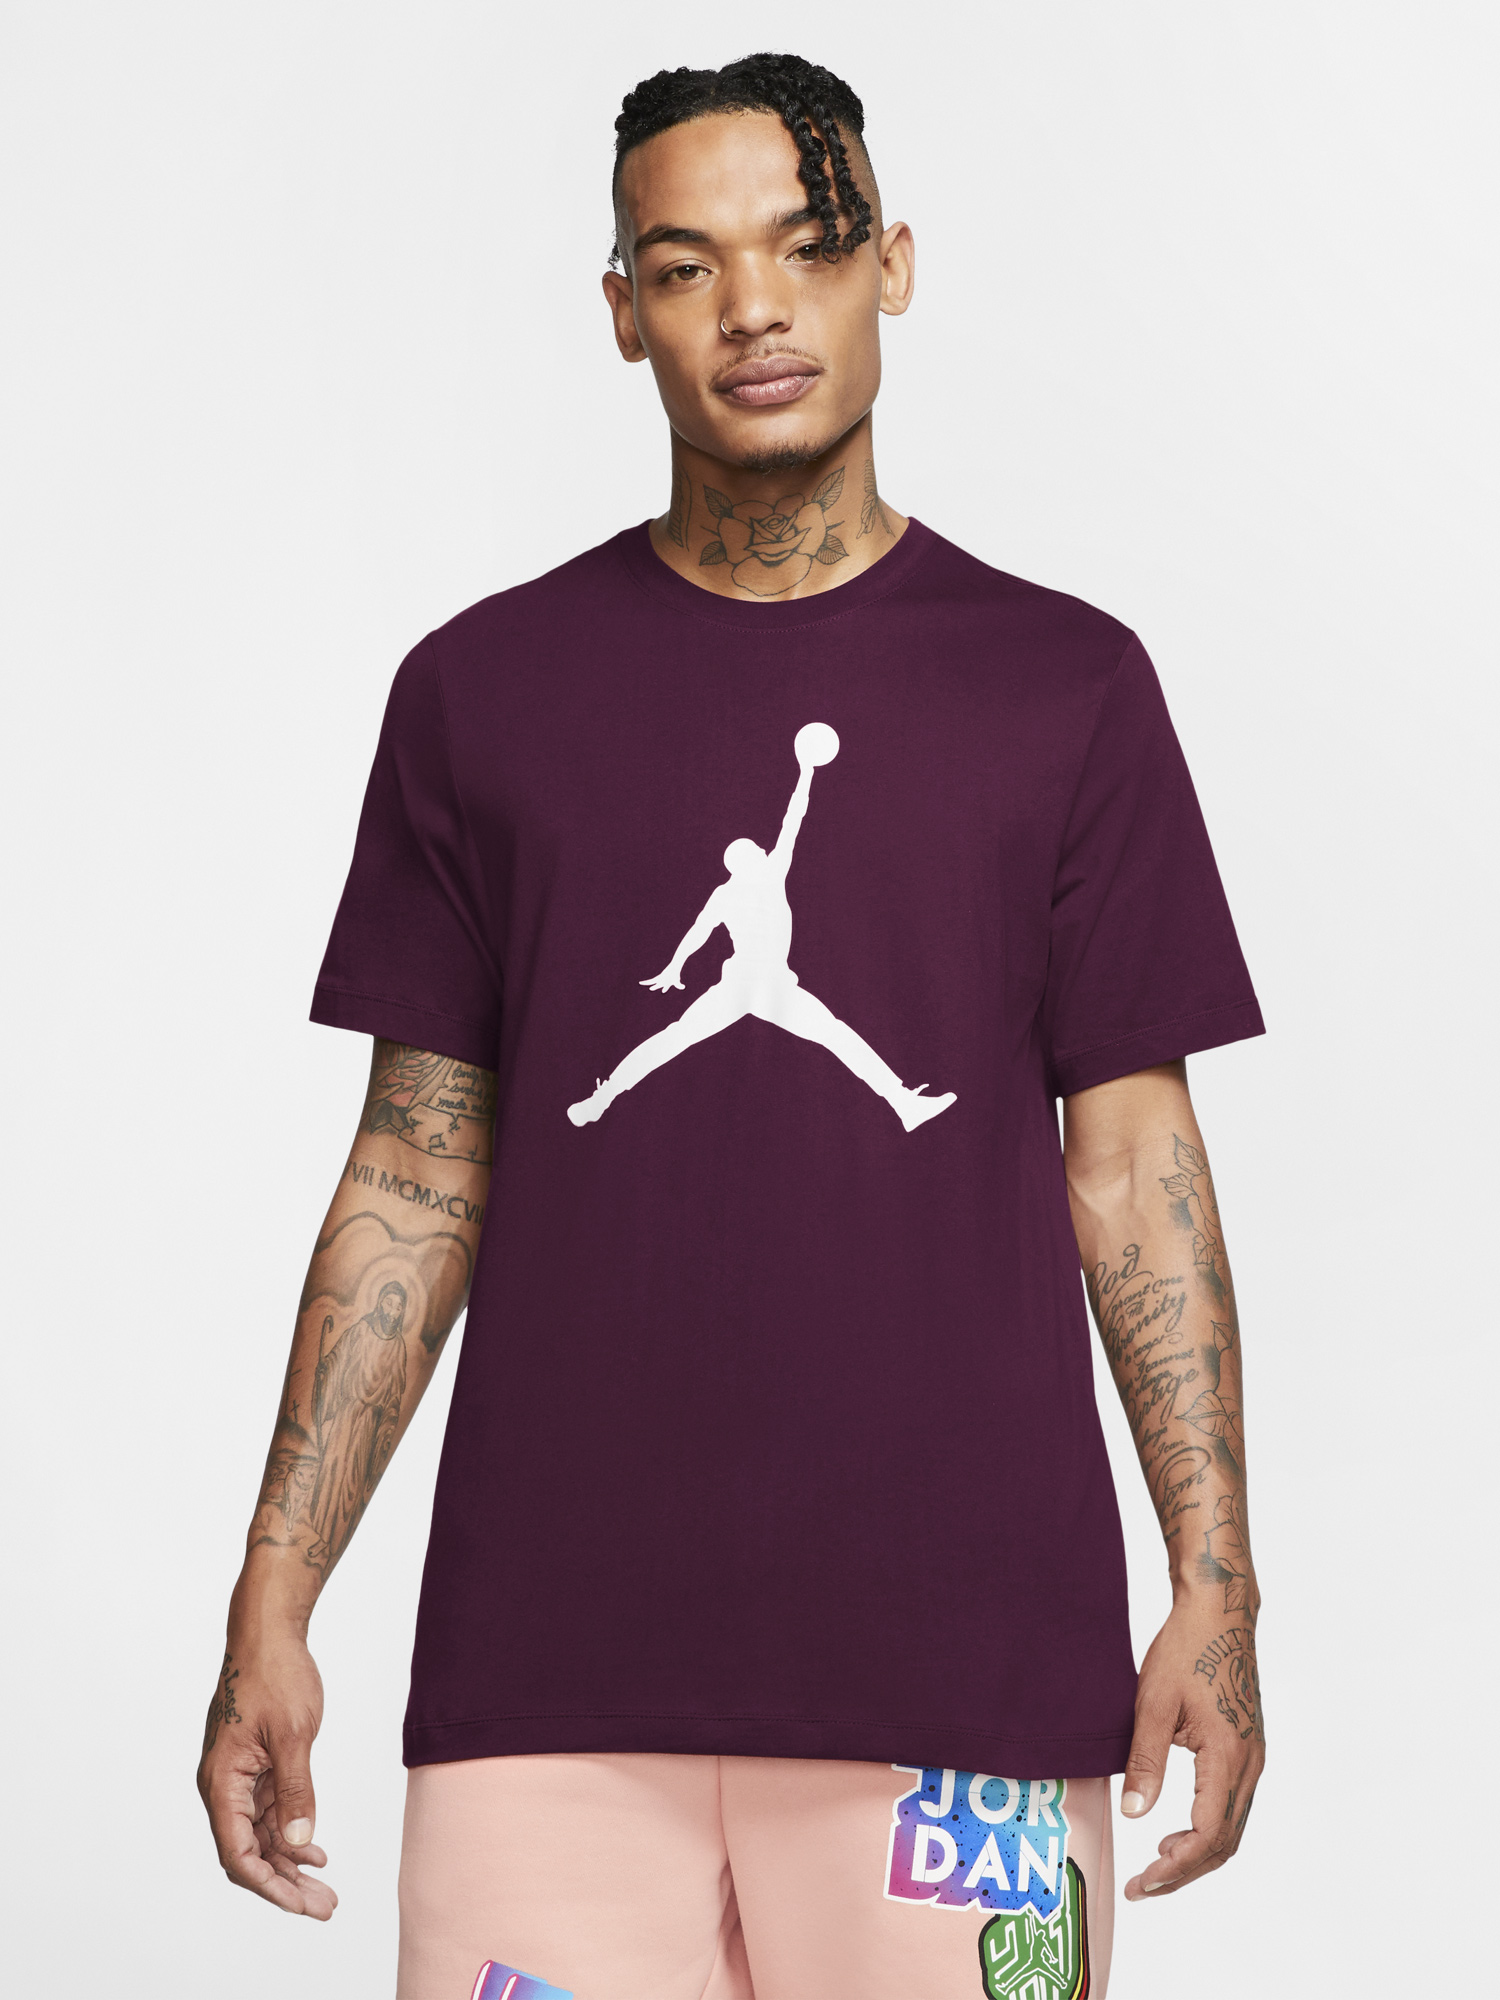 jordan-bordeaux-jumpman-shirt